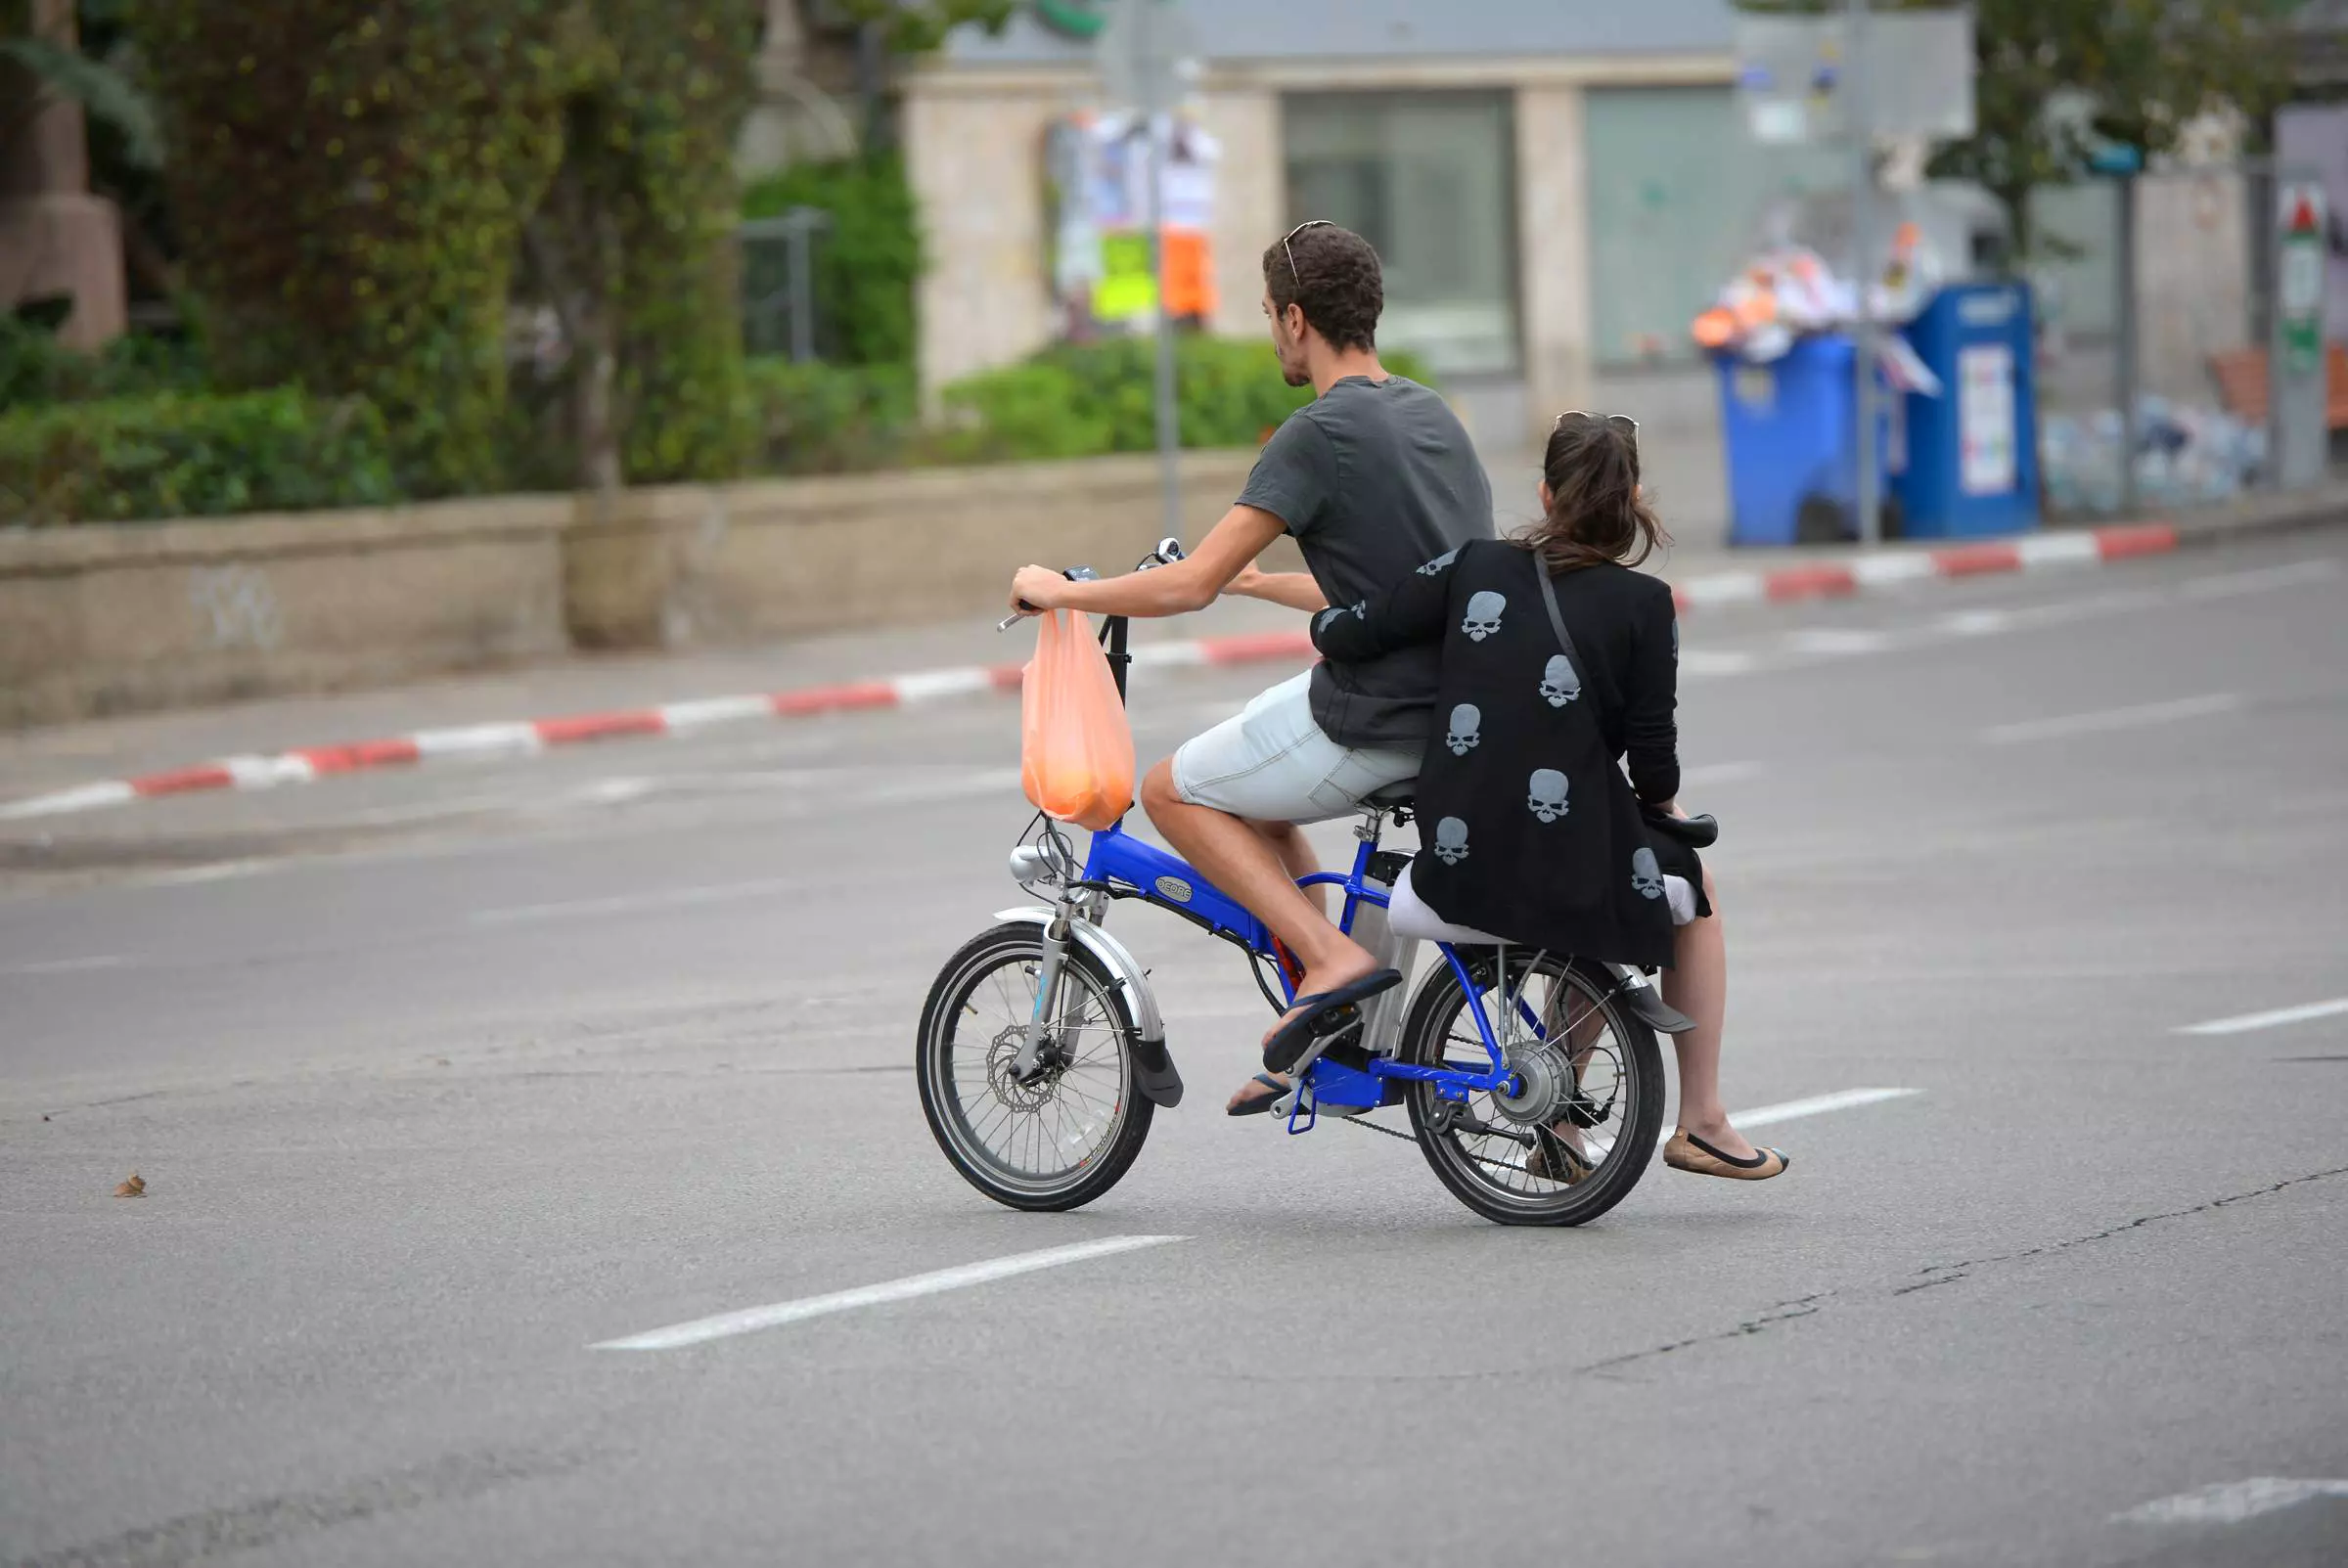 אופניים חשמליים, תל אביב, יוני 2016